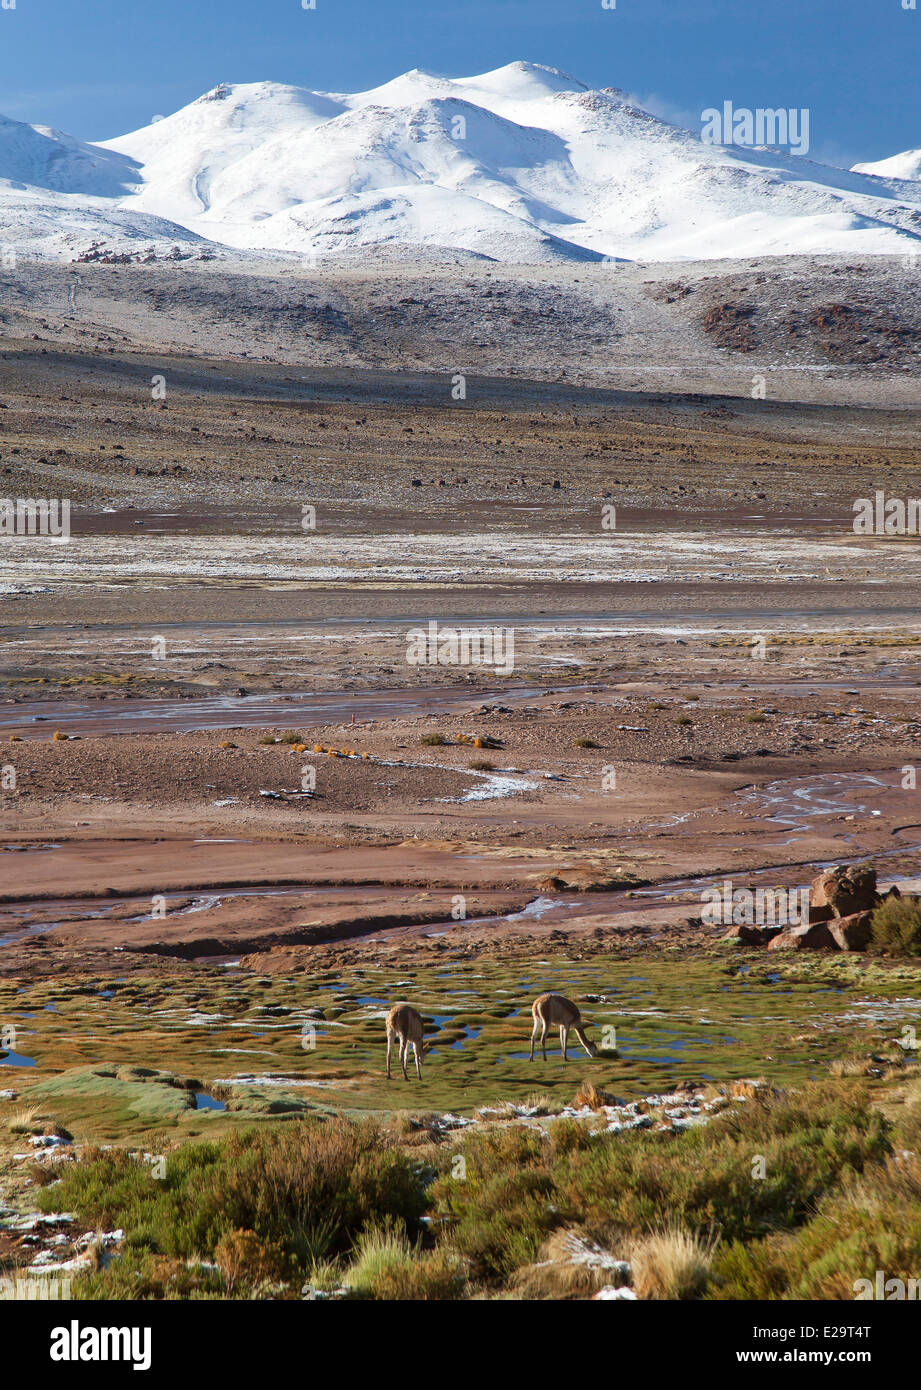 Chile, Antofagasta region, San Pedro de Atacama, El Tatio geothermal field Stock Photo